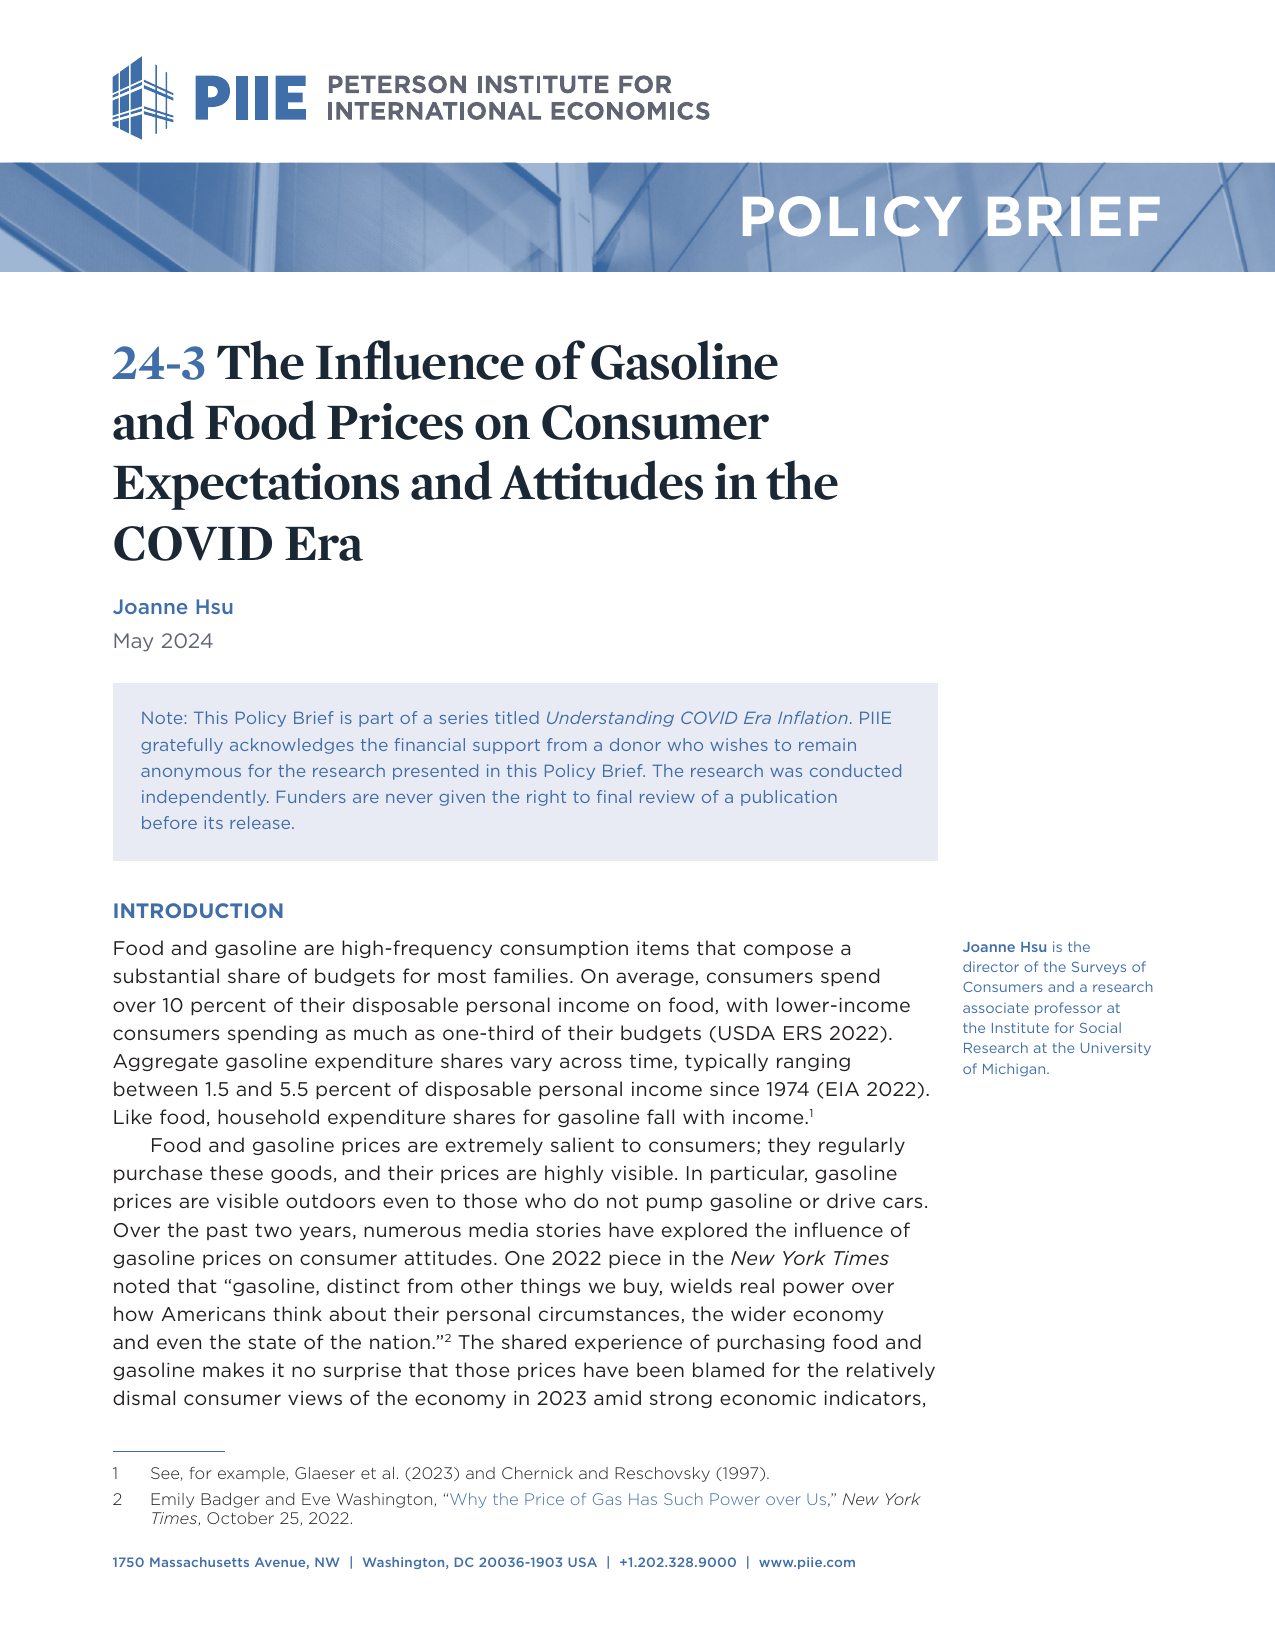 彼得森经济研究所-新冠肺炎时代汽油和食品价格对消费者预期和态度的影响（英）.pdf